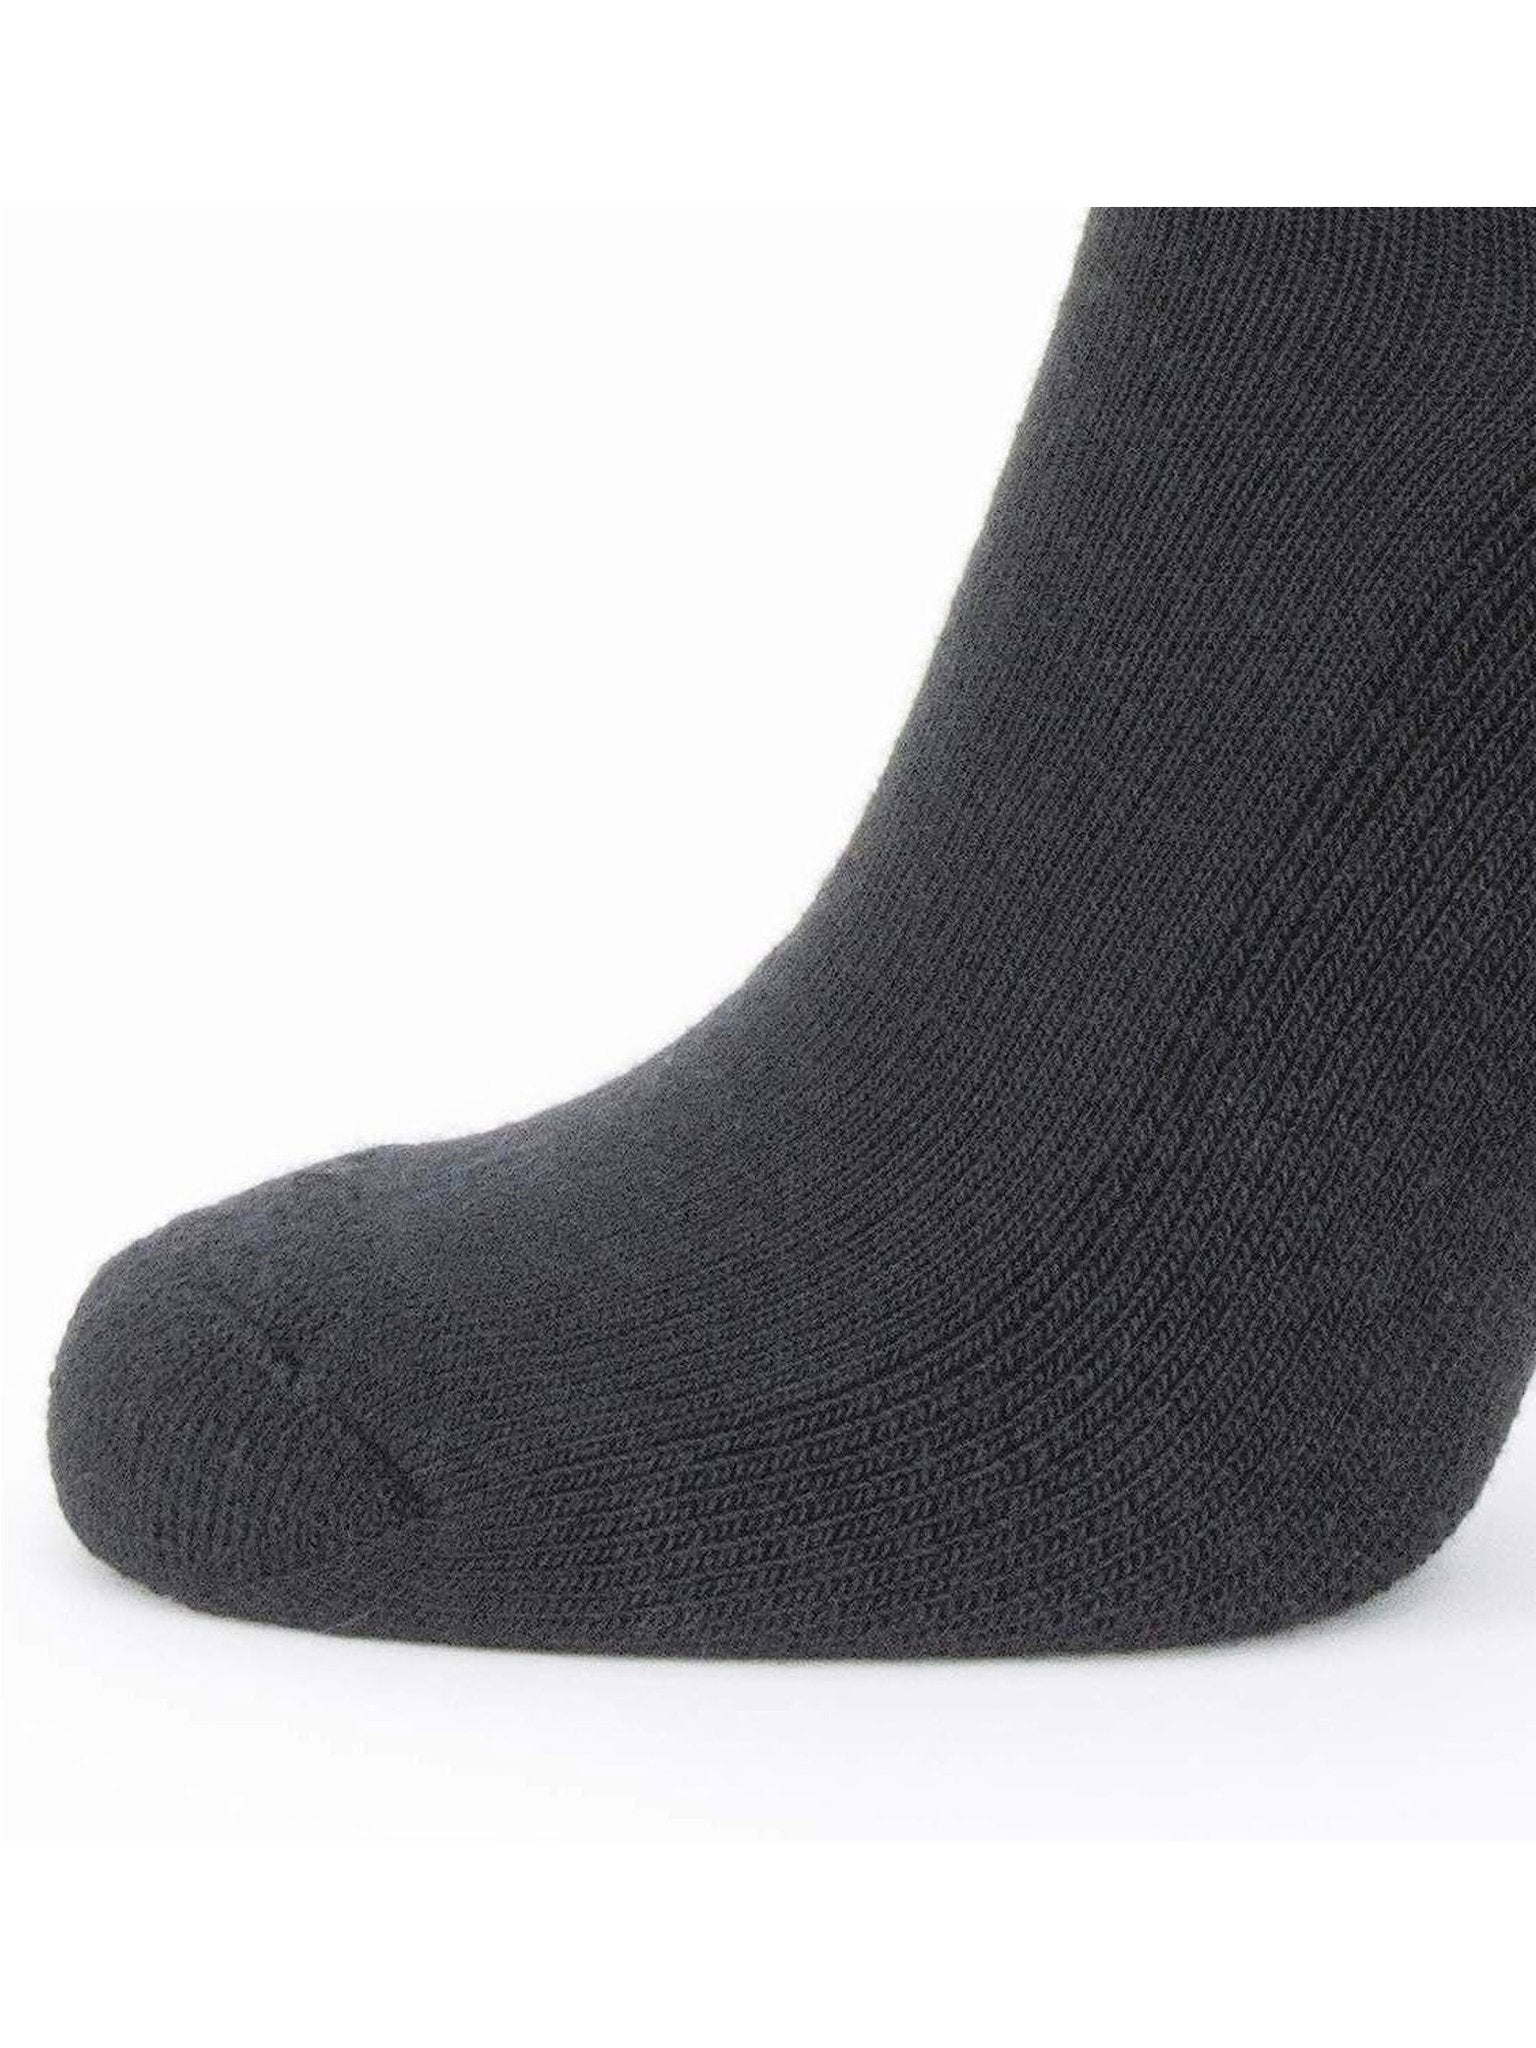 SealSkinz SealSkinz - Merino Socks / Solo Liner Sock Pair - Black Socks